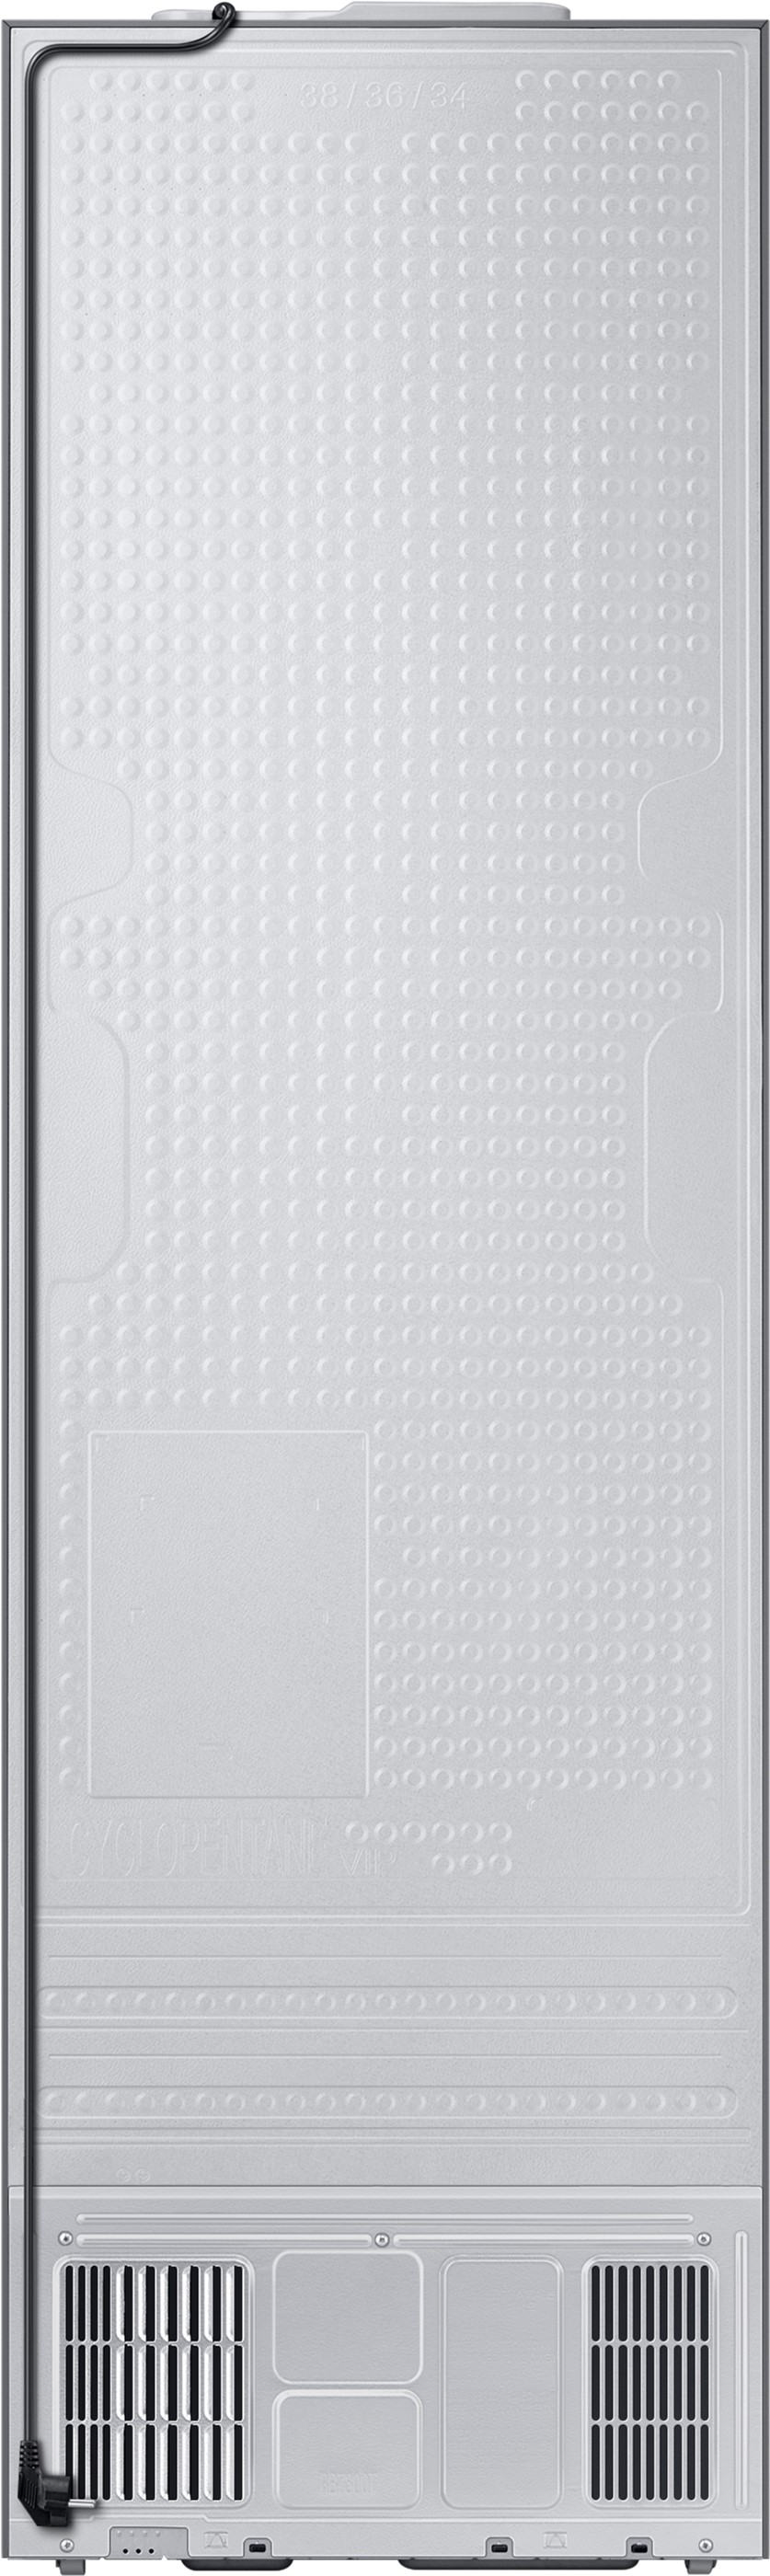 Холодильник Samsung RB38C676ES9/UA отзывы - изображения 5